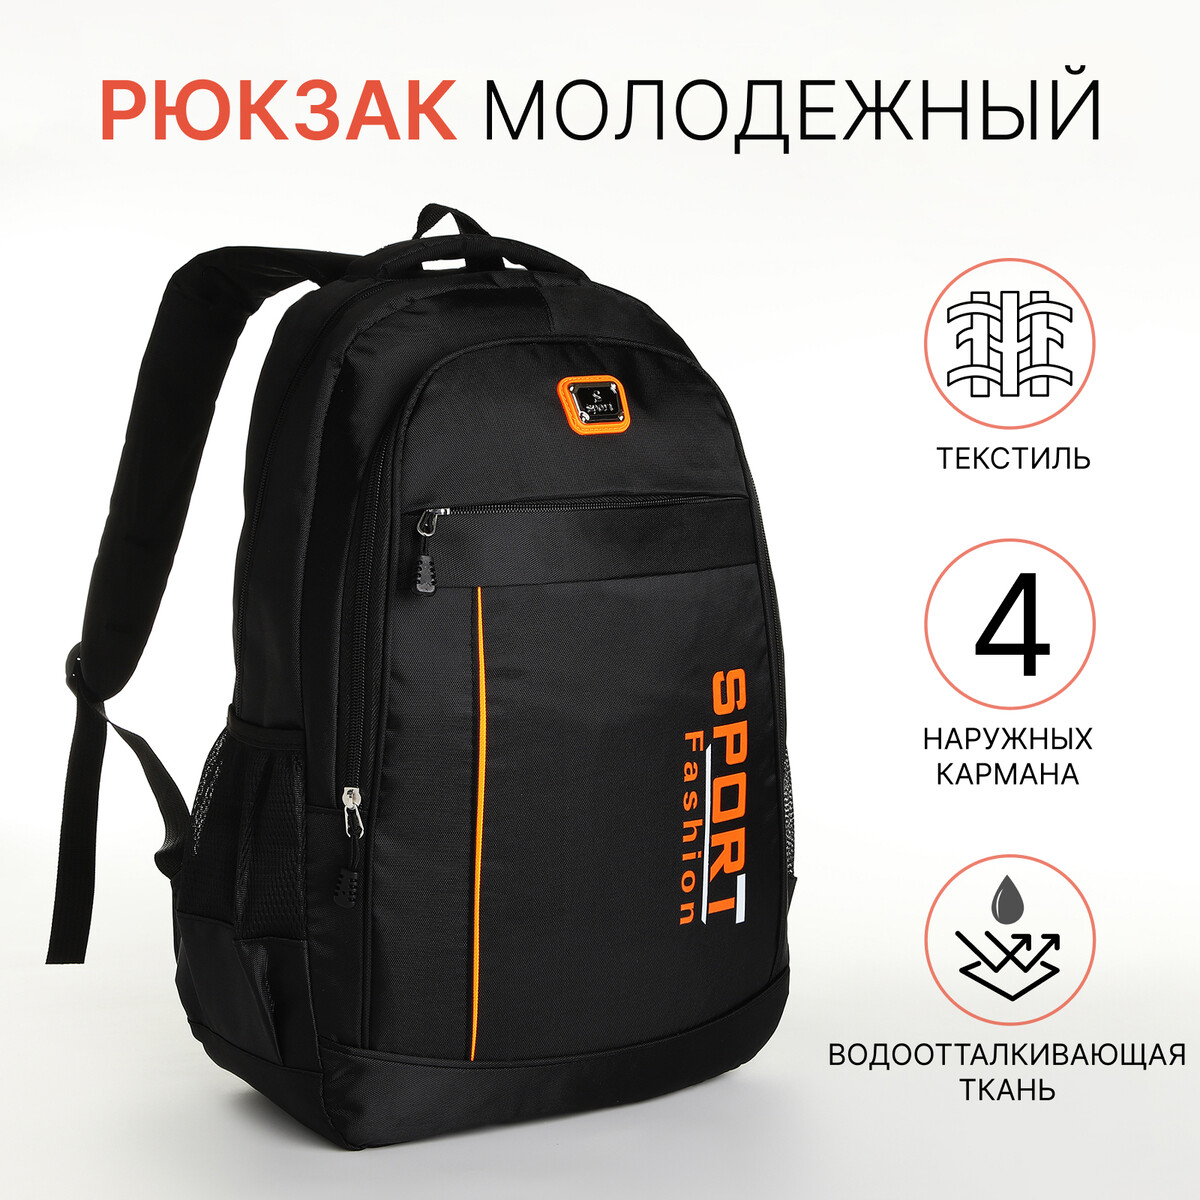 Рюкзак молодежный на молнии, 4 кармана, цвет черный/оранжевый рюкзак ninetygo urban daily backpack оранжевый